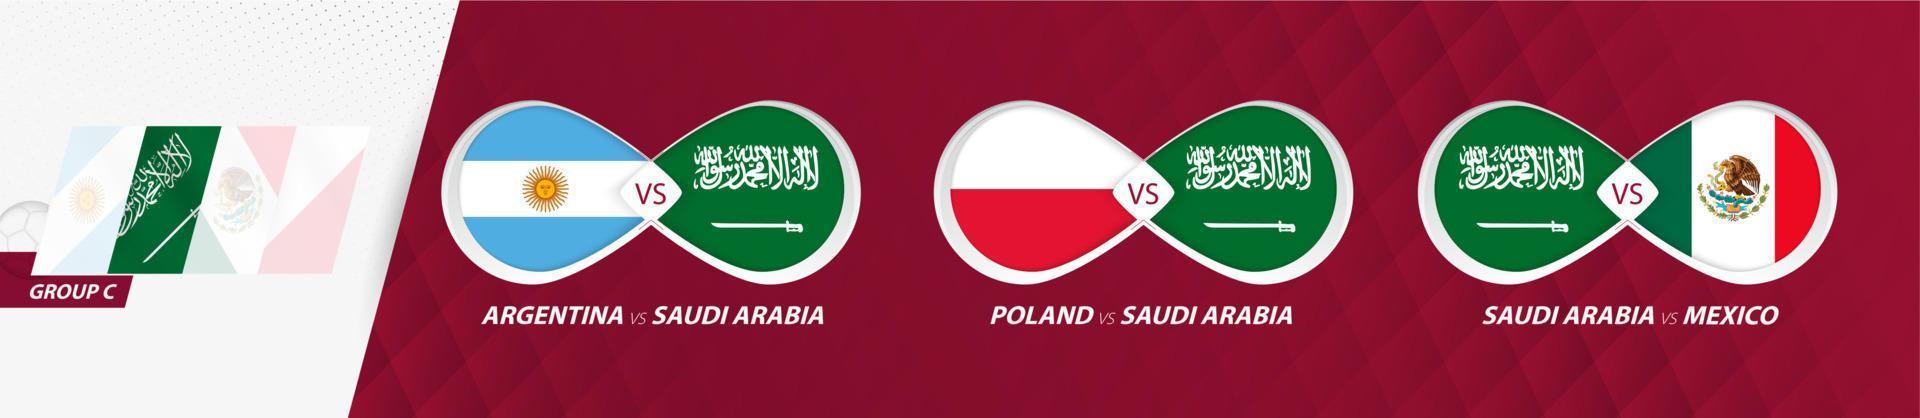 partidos de la selección nacional de arabia saudita en el grupo c, competición de fútbol 2022, icono de todos los juegos en la fase de grupos. vector